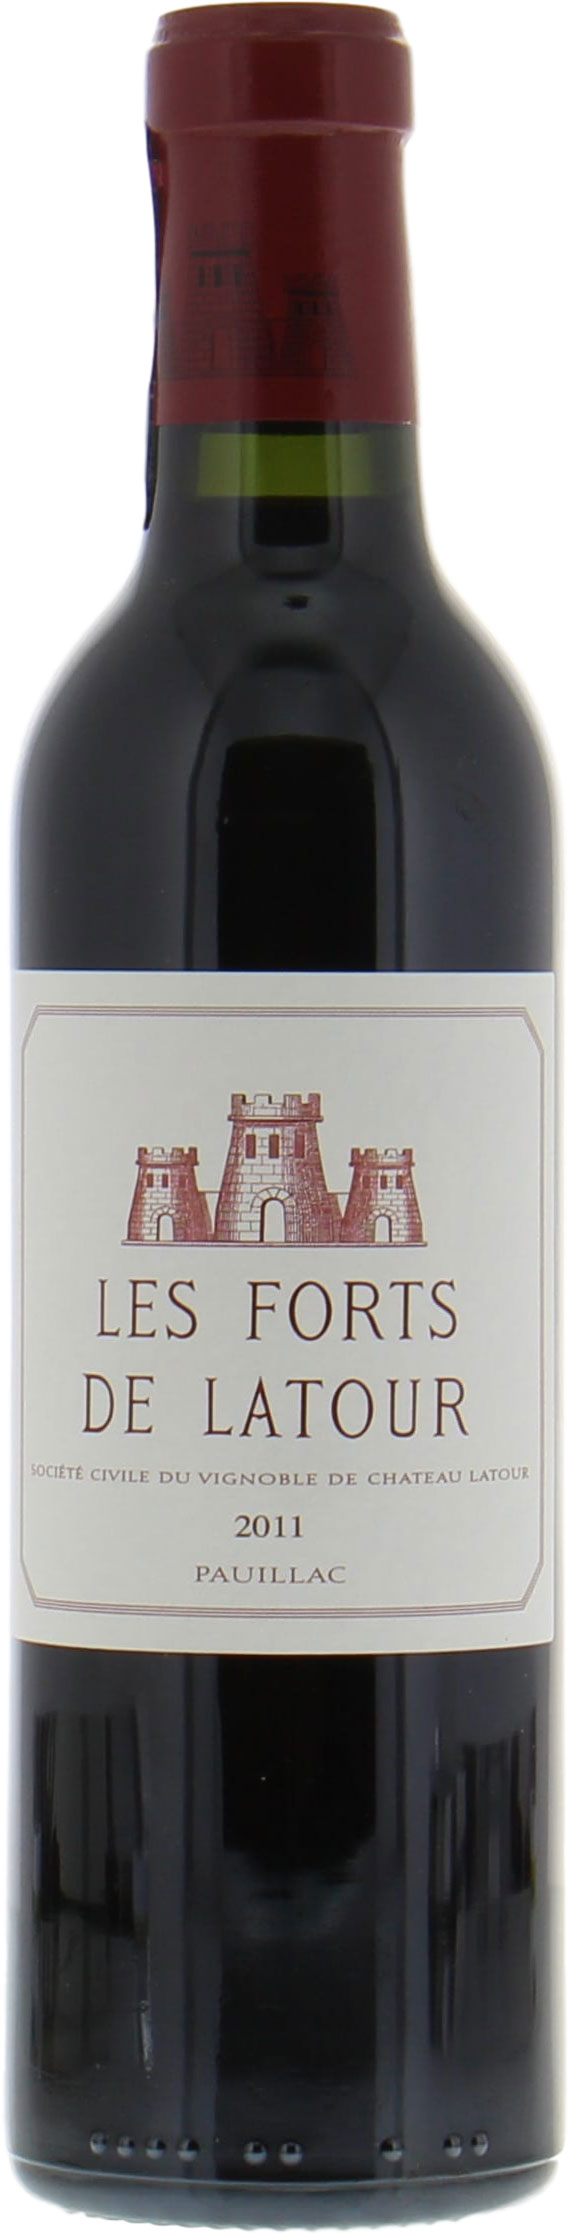 Chateau Latour - Les Forts de Latour 2011 From Original Wooden Case